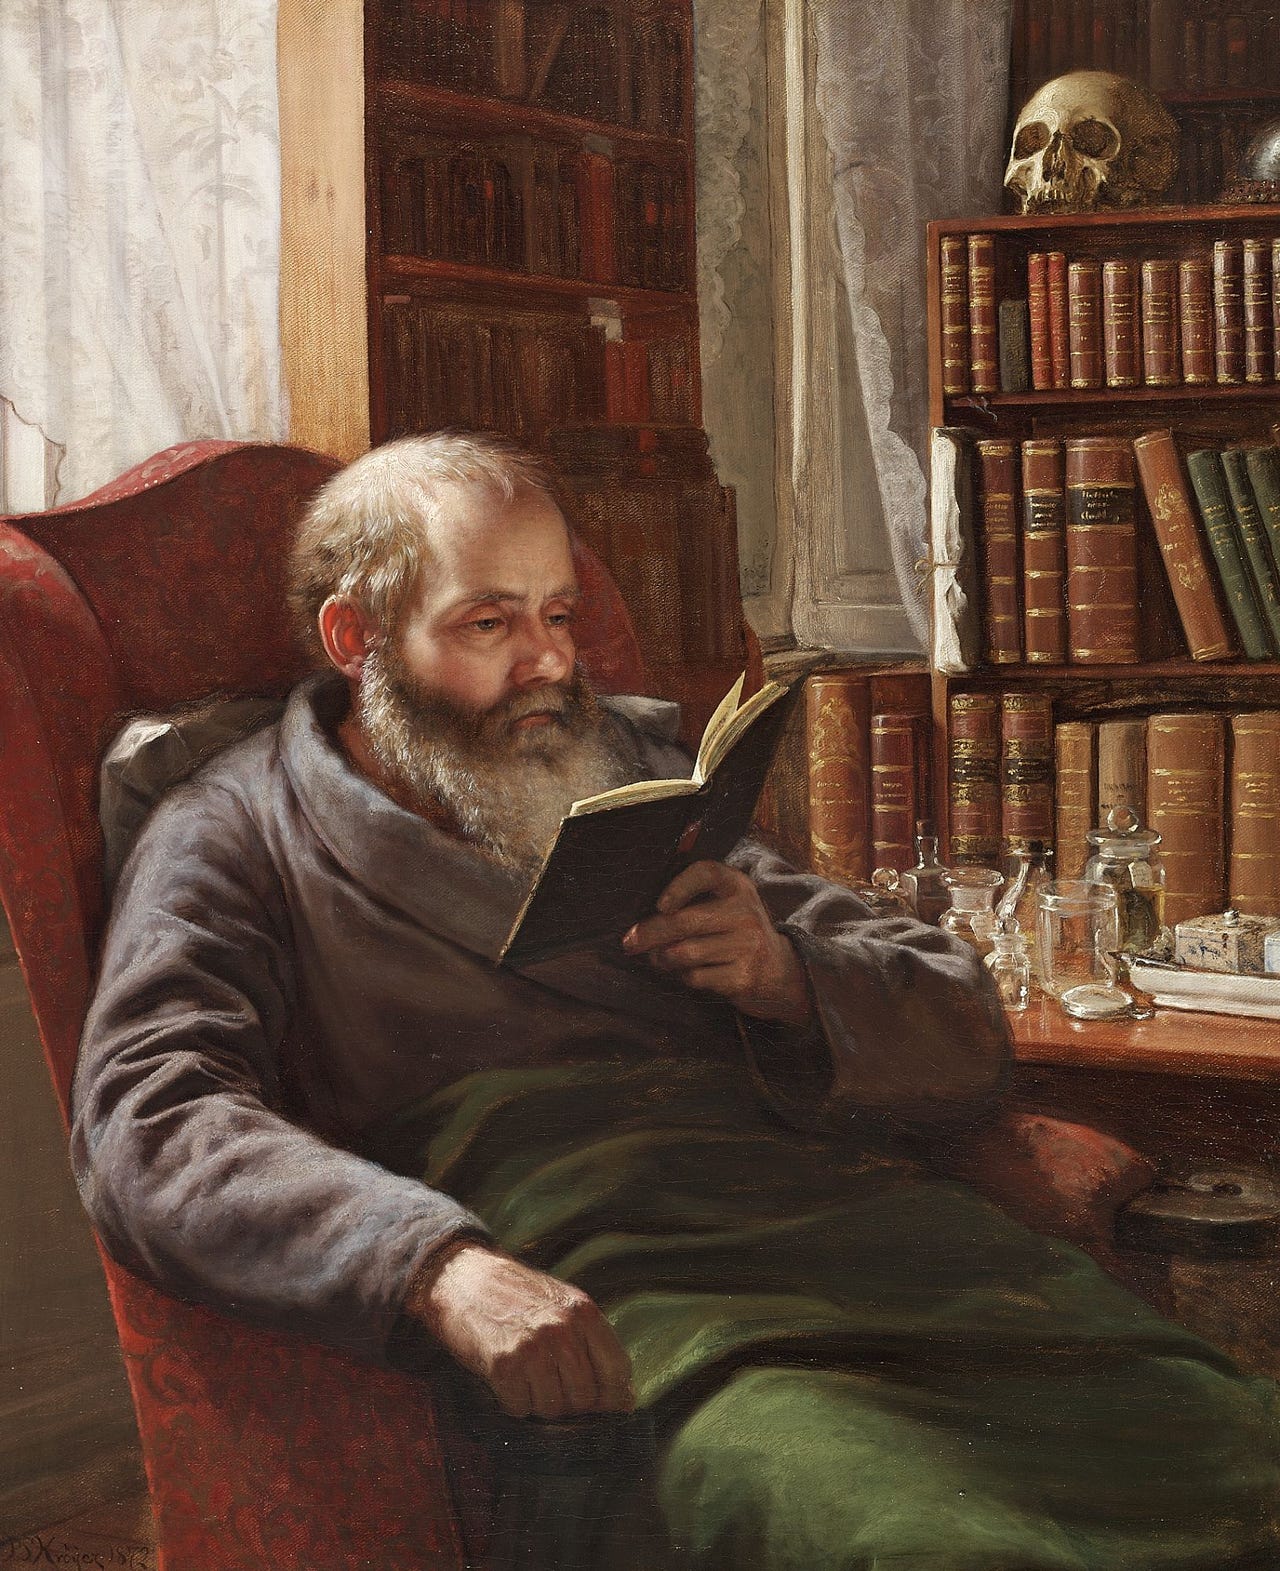 Peder Severin Krøyer - Portræt af kunstnerens plejefar, professor, zoolog Henrik Nicolai Krøyer - 1872.png